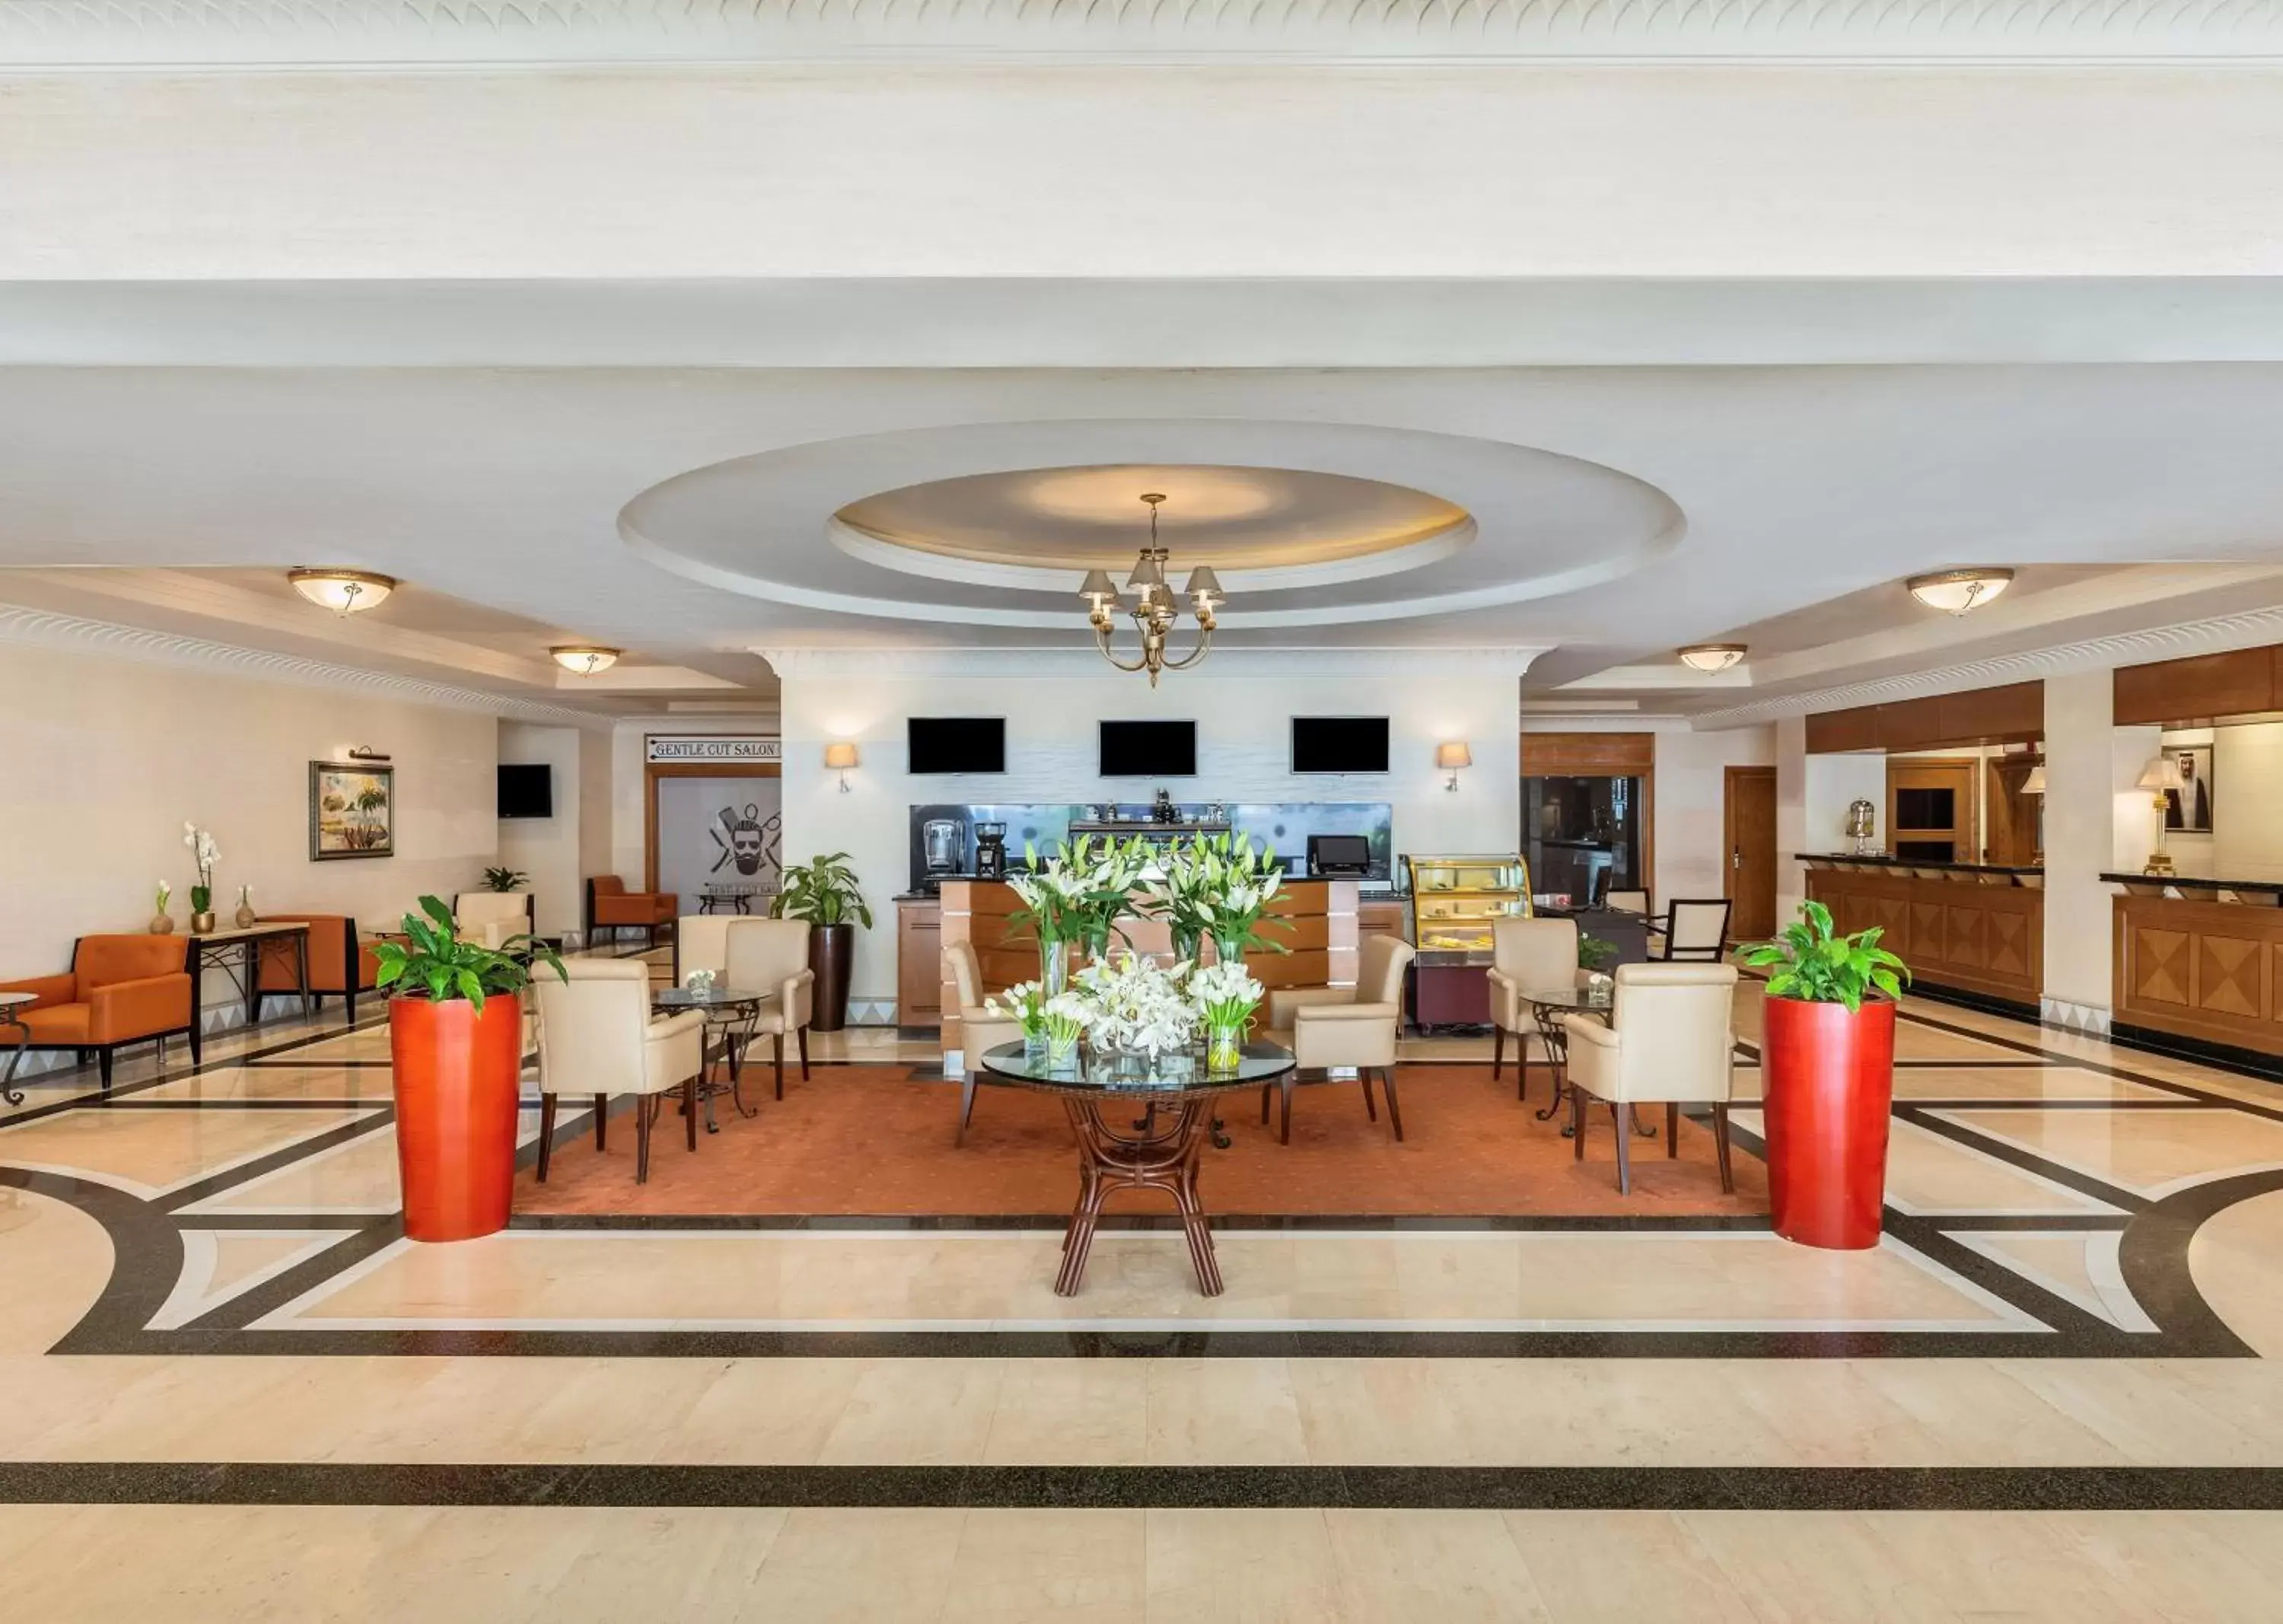 Lobby or reception in Movenpick Hotel Doha